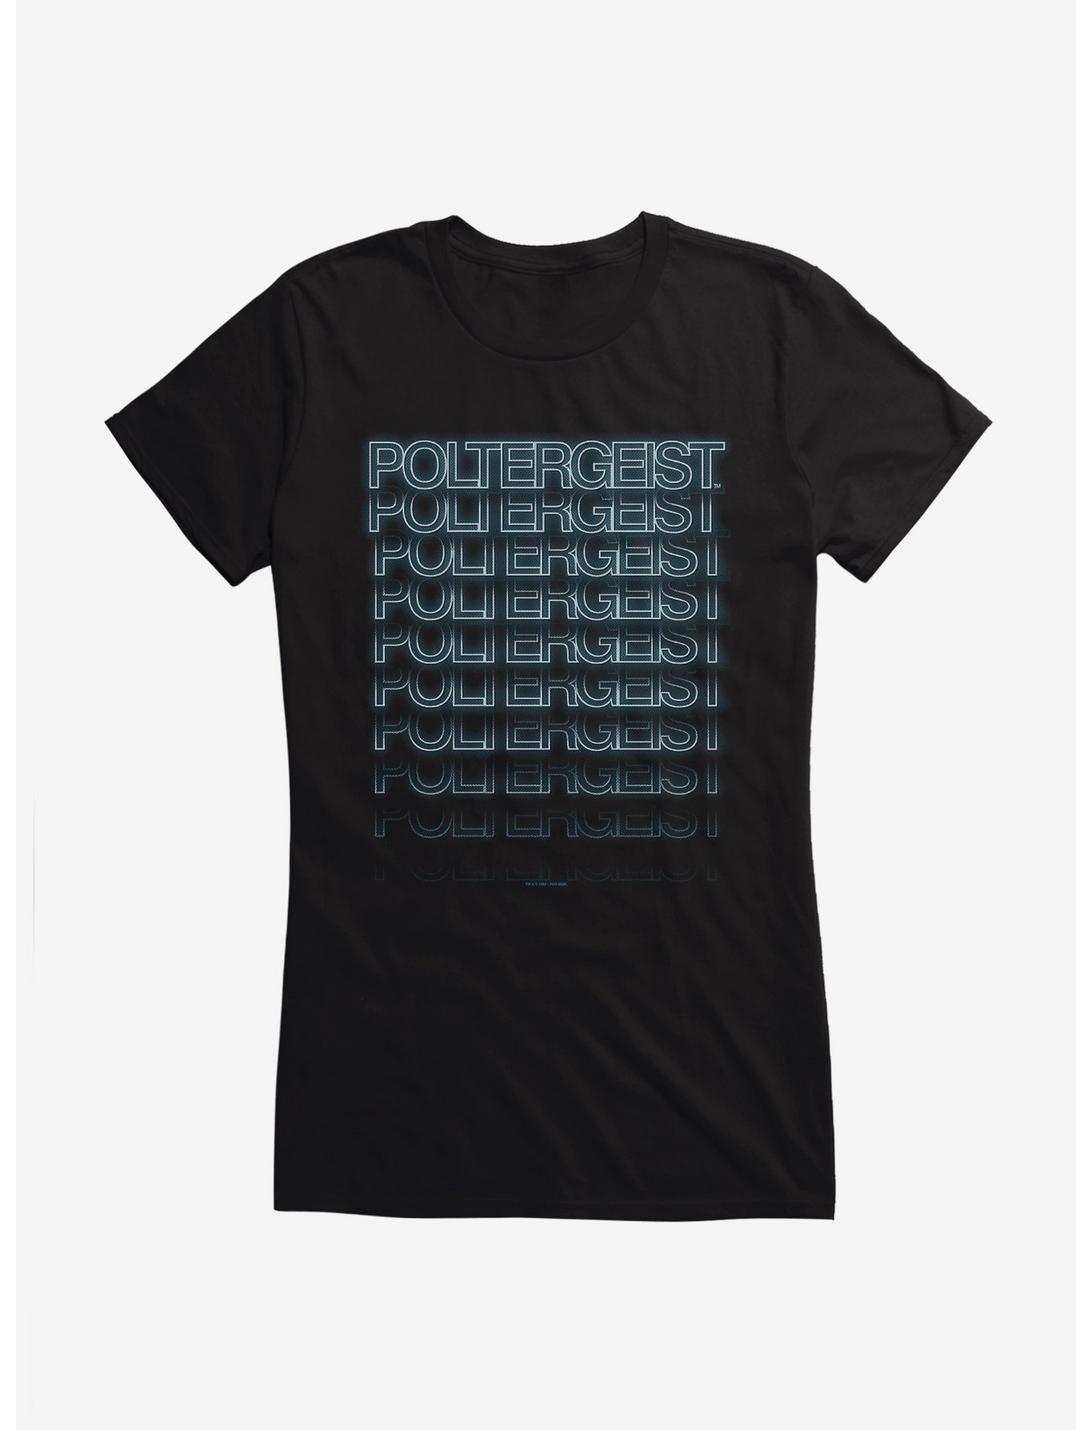 Poltergeist Layered Logo Girls T-Shirt, BLACK, hi-res